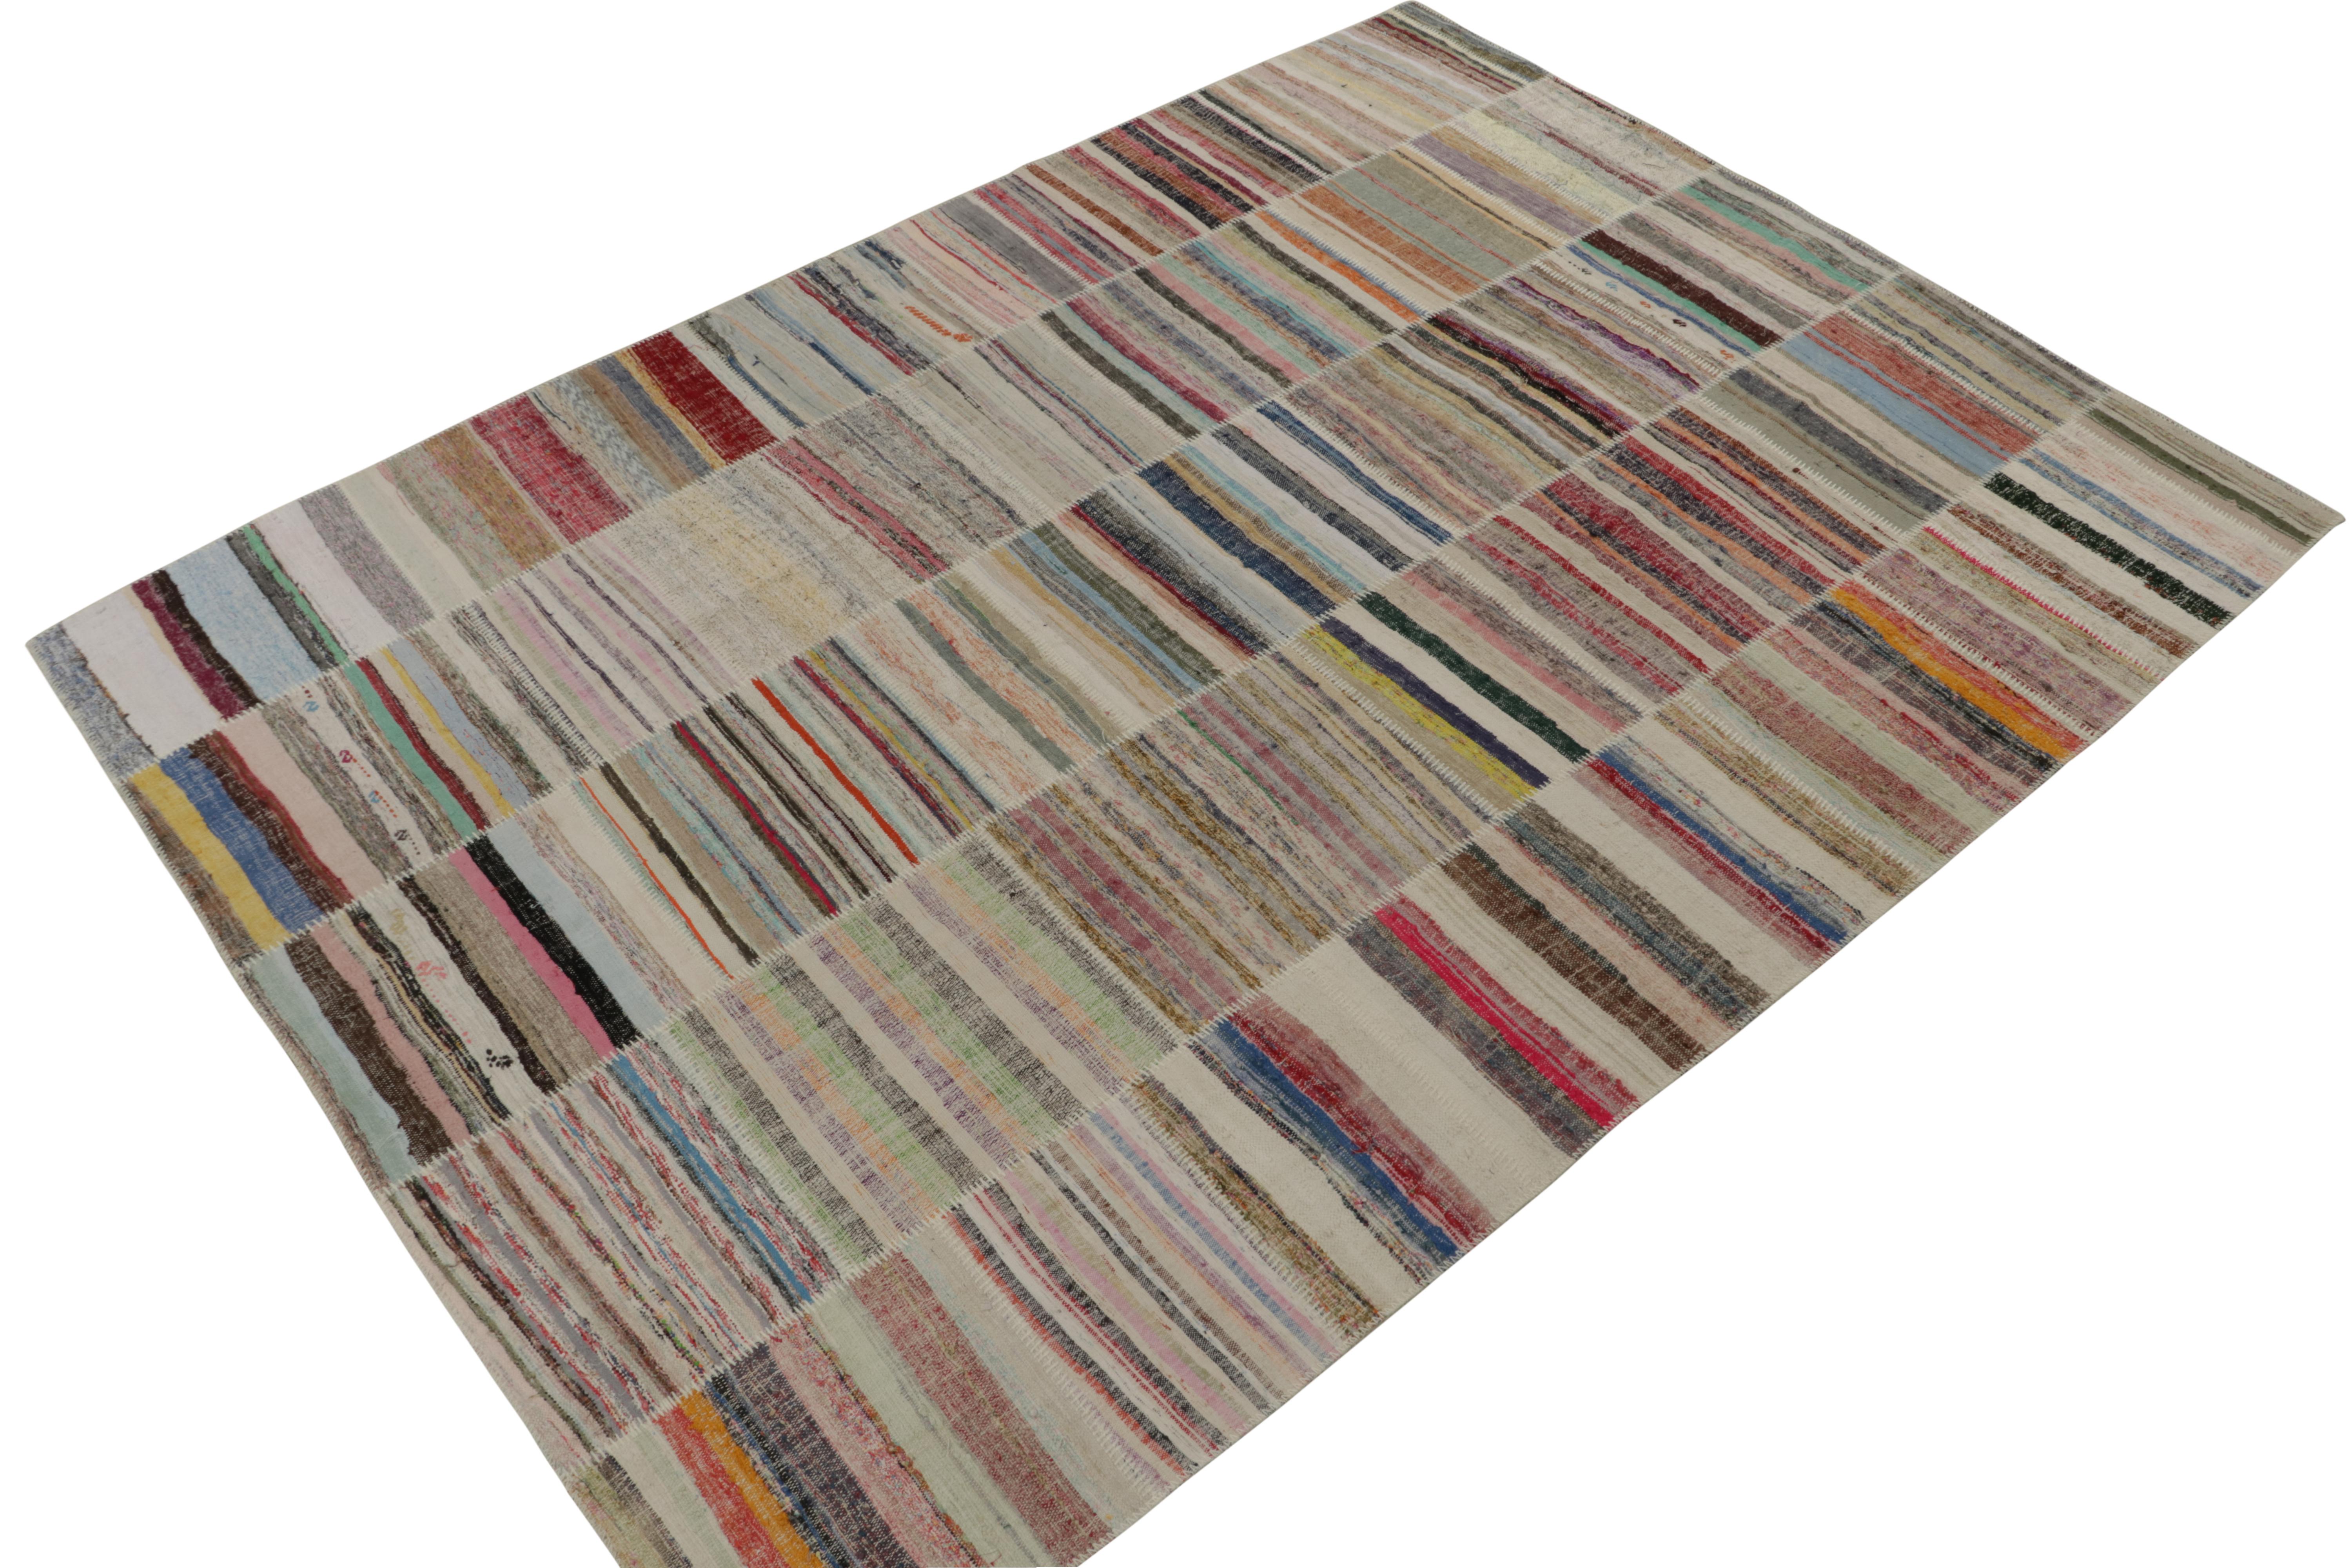 Rug & Kilim präsentiert einen geräumigen, modernen Teppich im Format 9x12 aus ihrer innovativen neuen Patchwork-Kilim-Kollektion. Er ist aus Wolle handgeknüpft. 

Über das Design: 

Bei dieser Flachgewebetechnik werden Vintage-Garne in polychromen